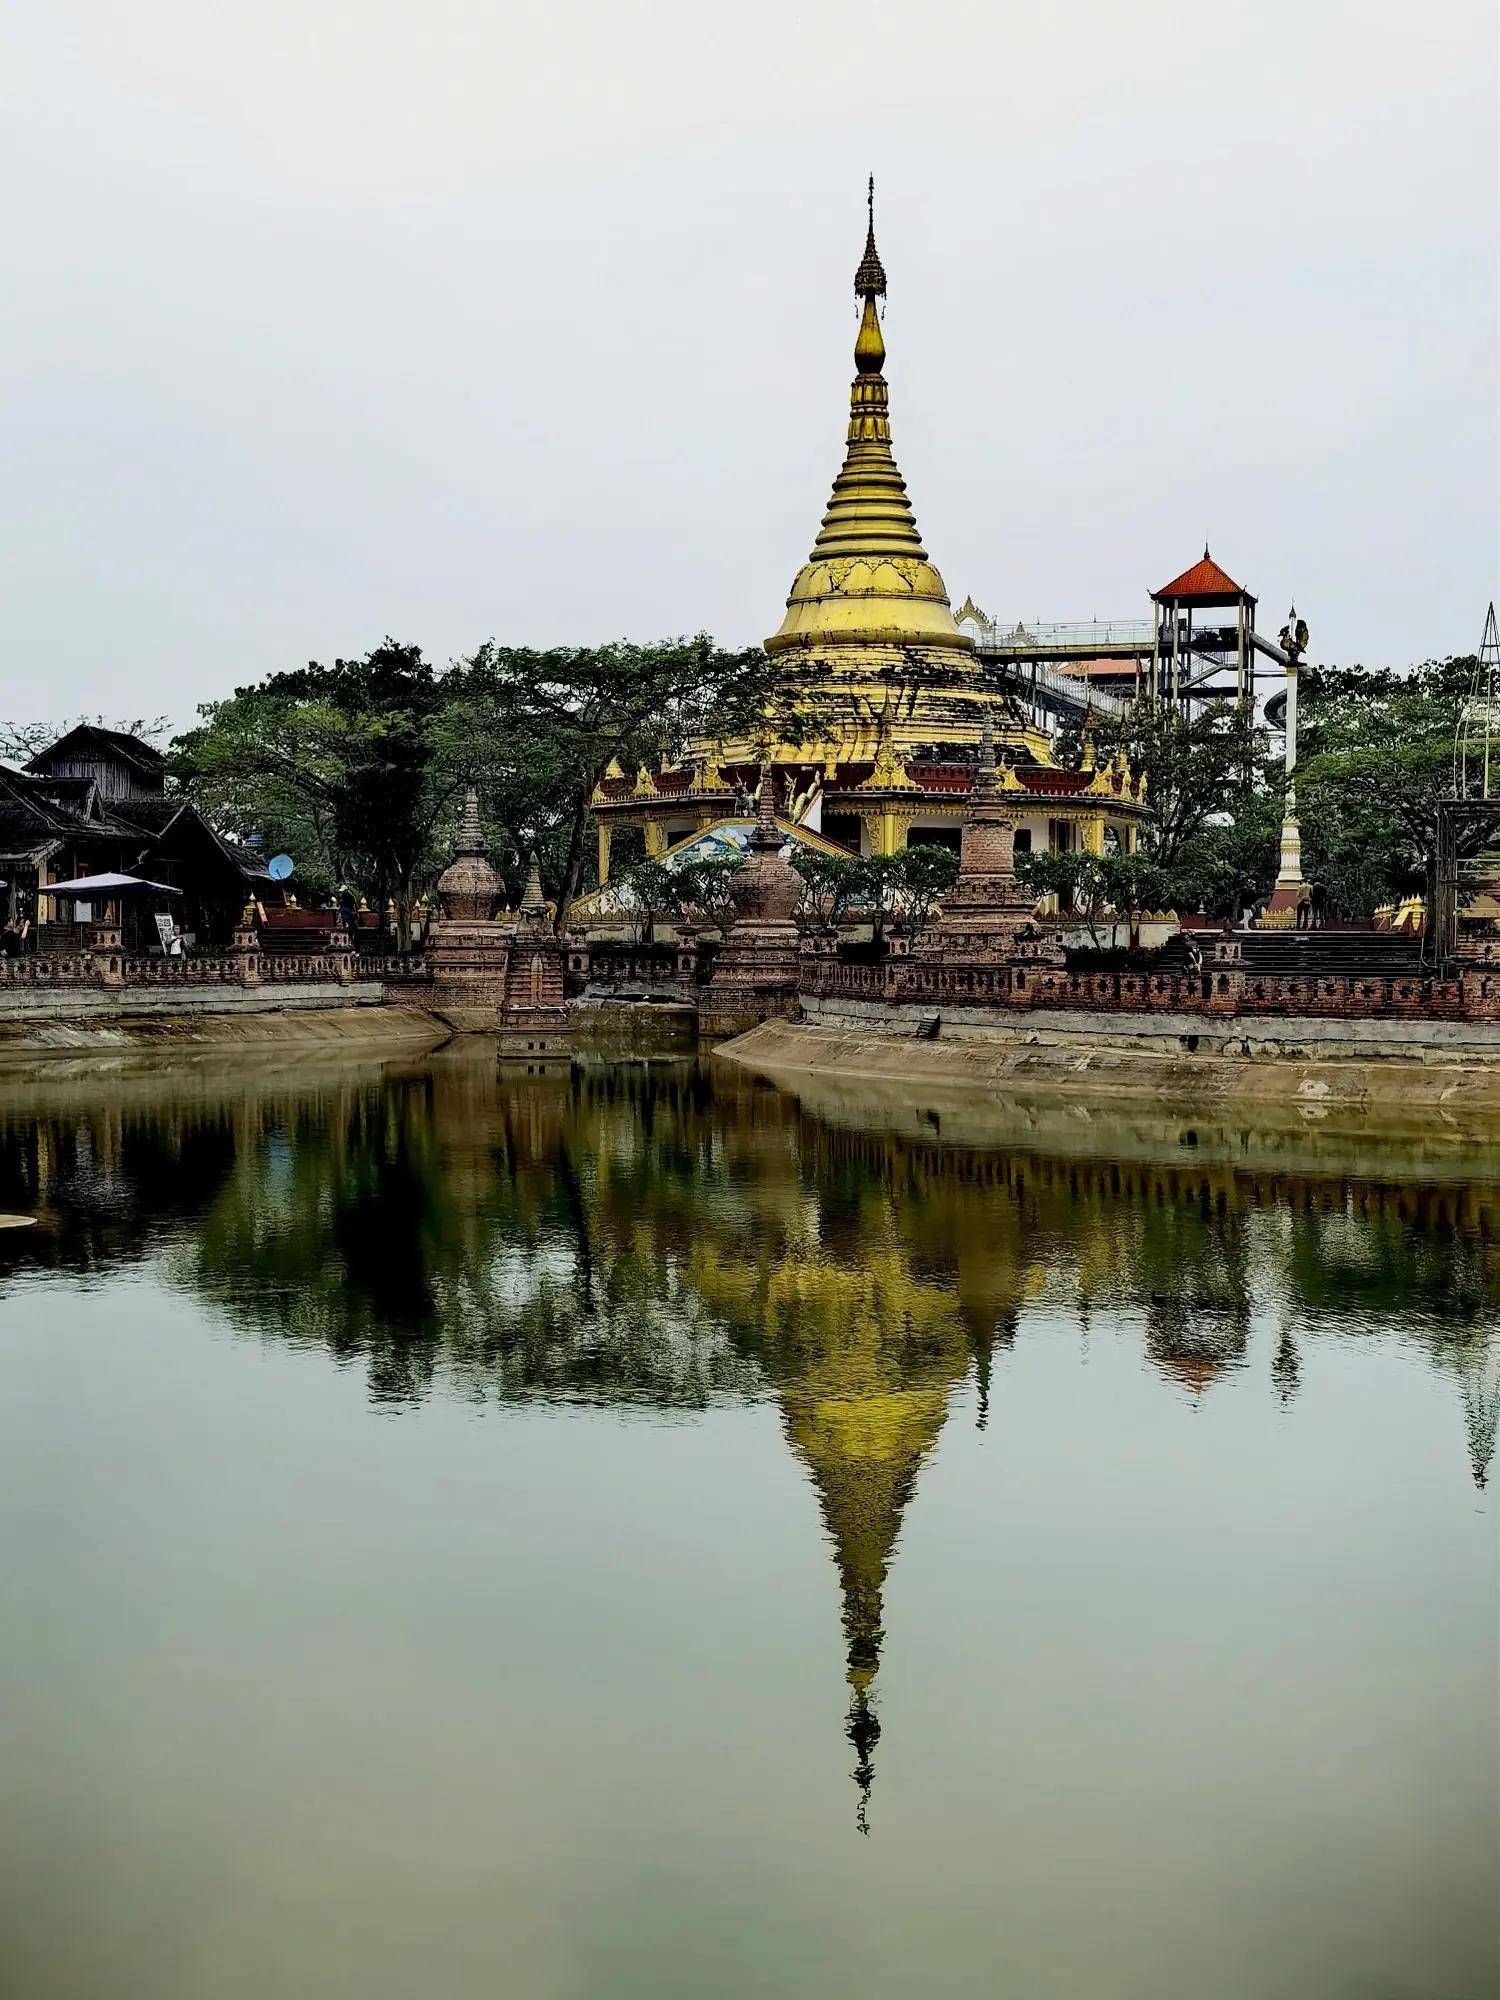 云南德宏:一寨两国成景区,游客体验缅甸文化习俗和美食